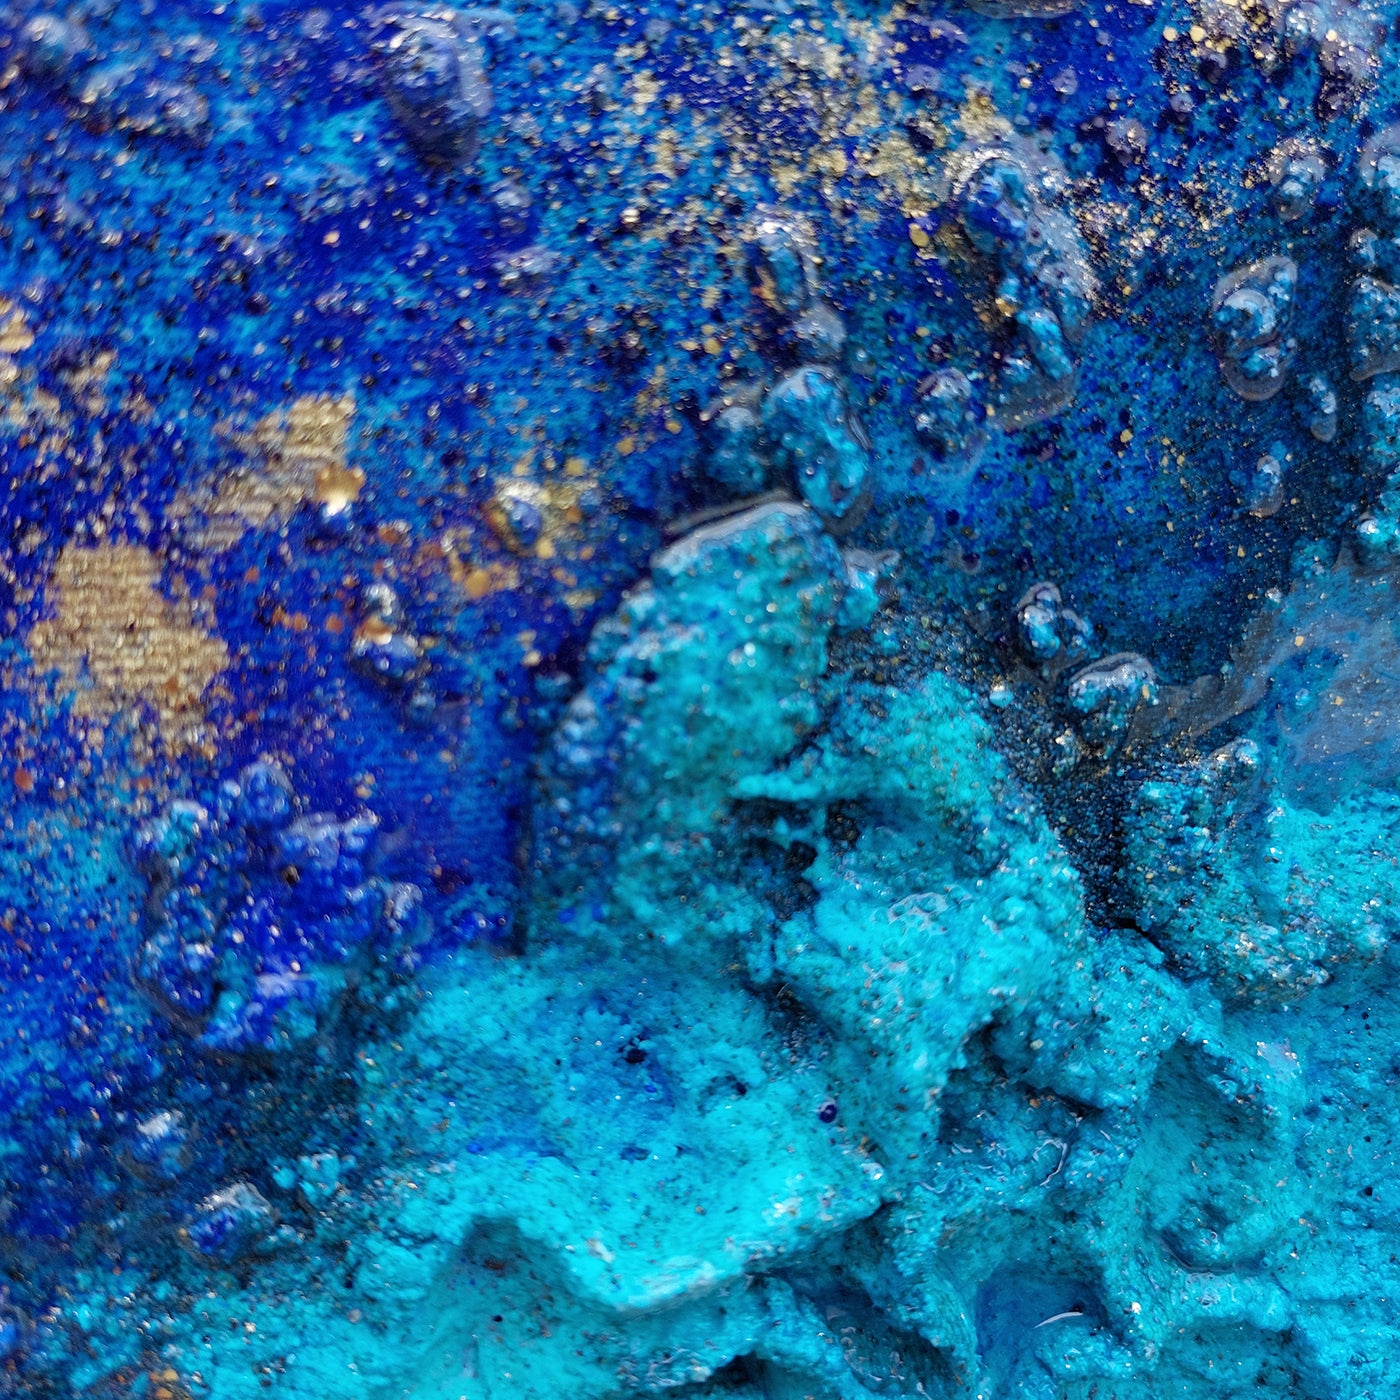 Deep Blue Reef Pintura de técnica mixta - Vista alternativa 4